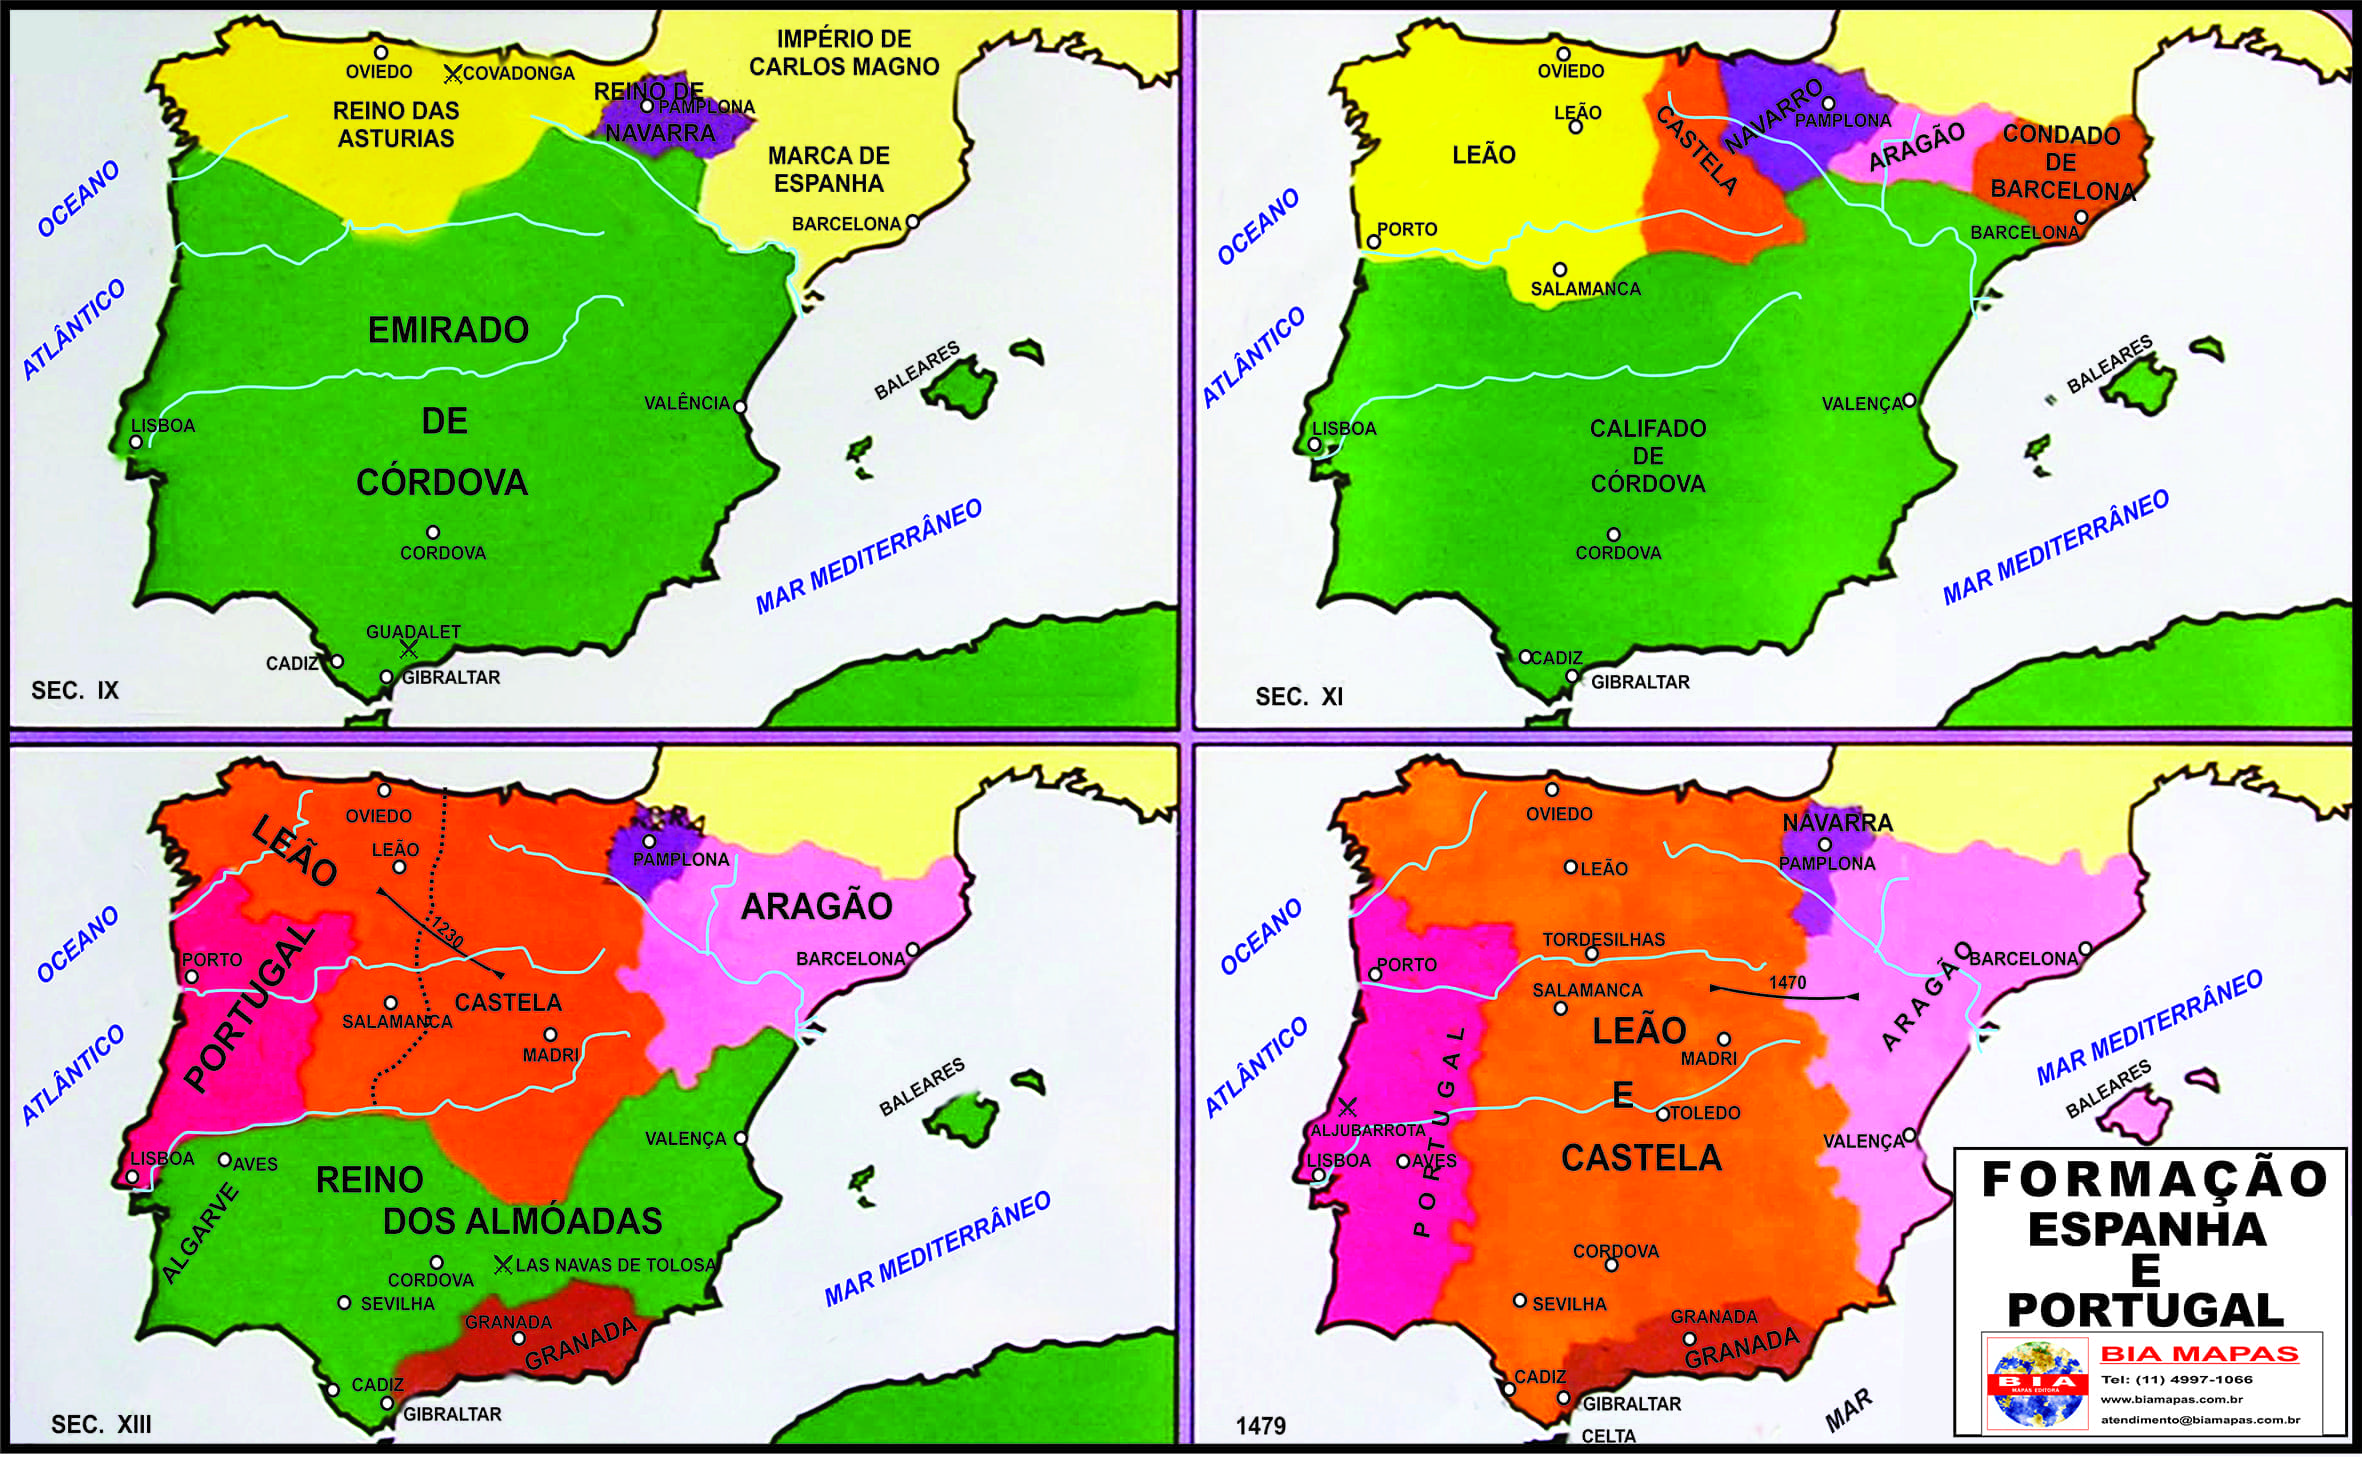 Olhar para ver: Sobre a formação de Portugal e Espanha (parte II)